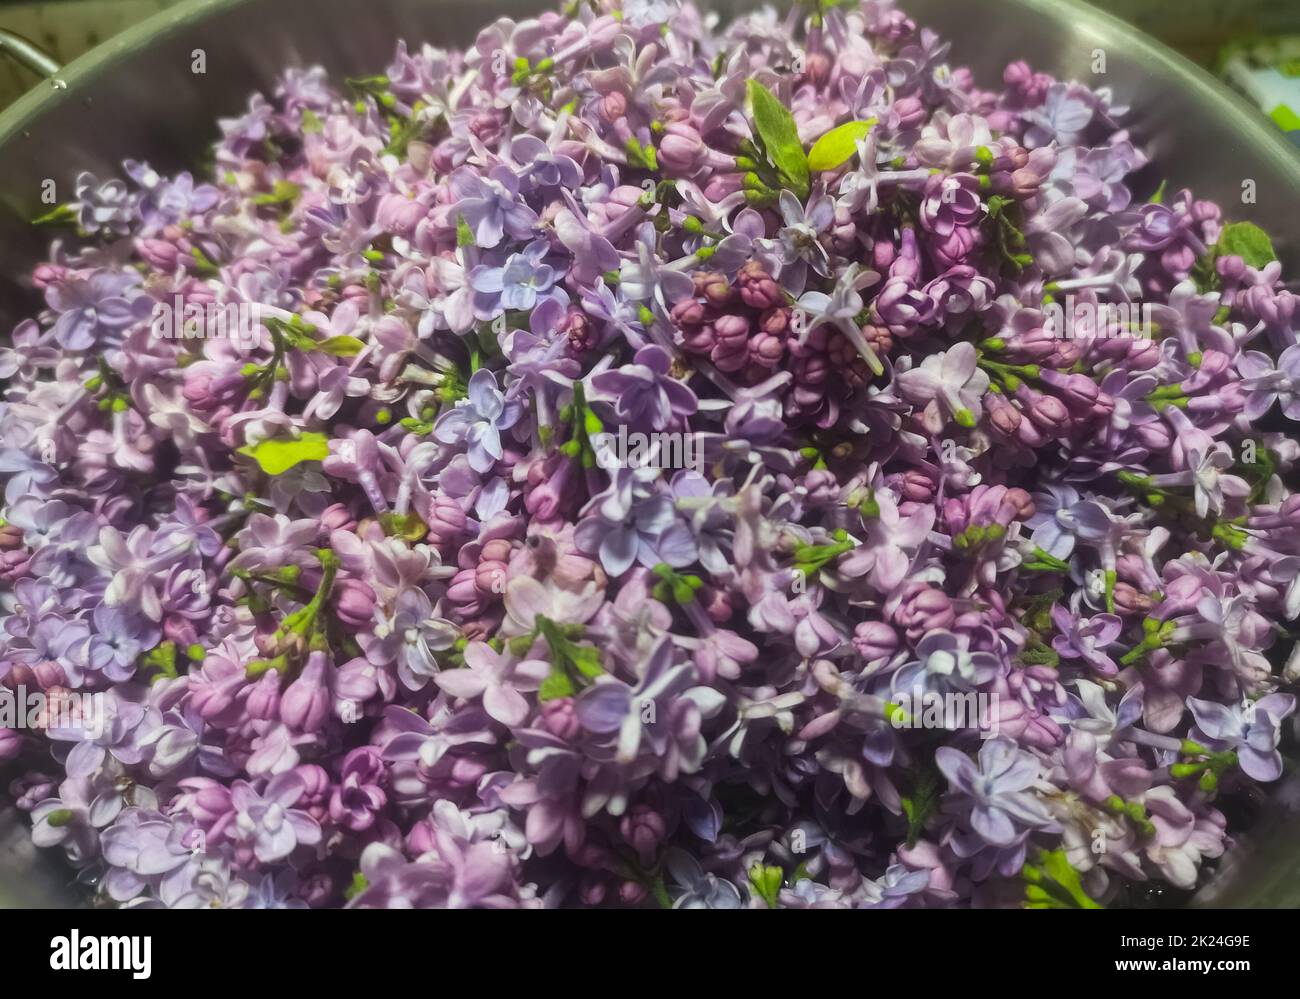 beaucoup de fleurs de lilas fraîches recueillies pour un jus de sirup Banque D'Images